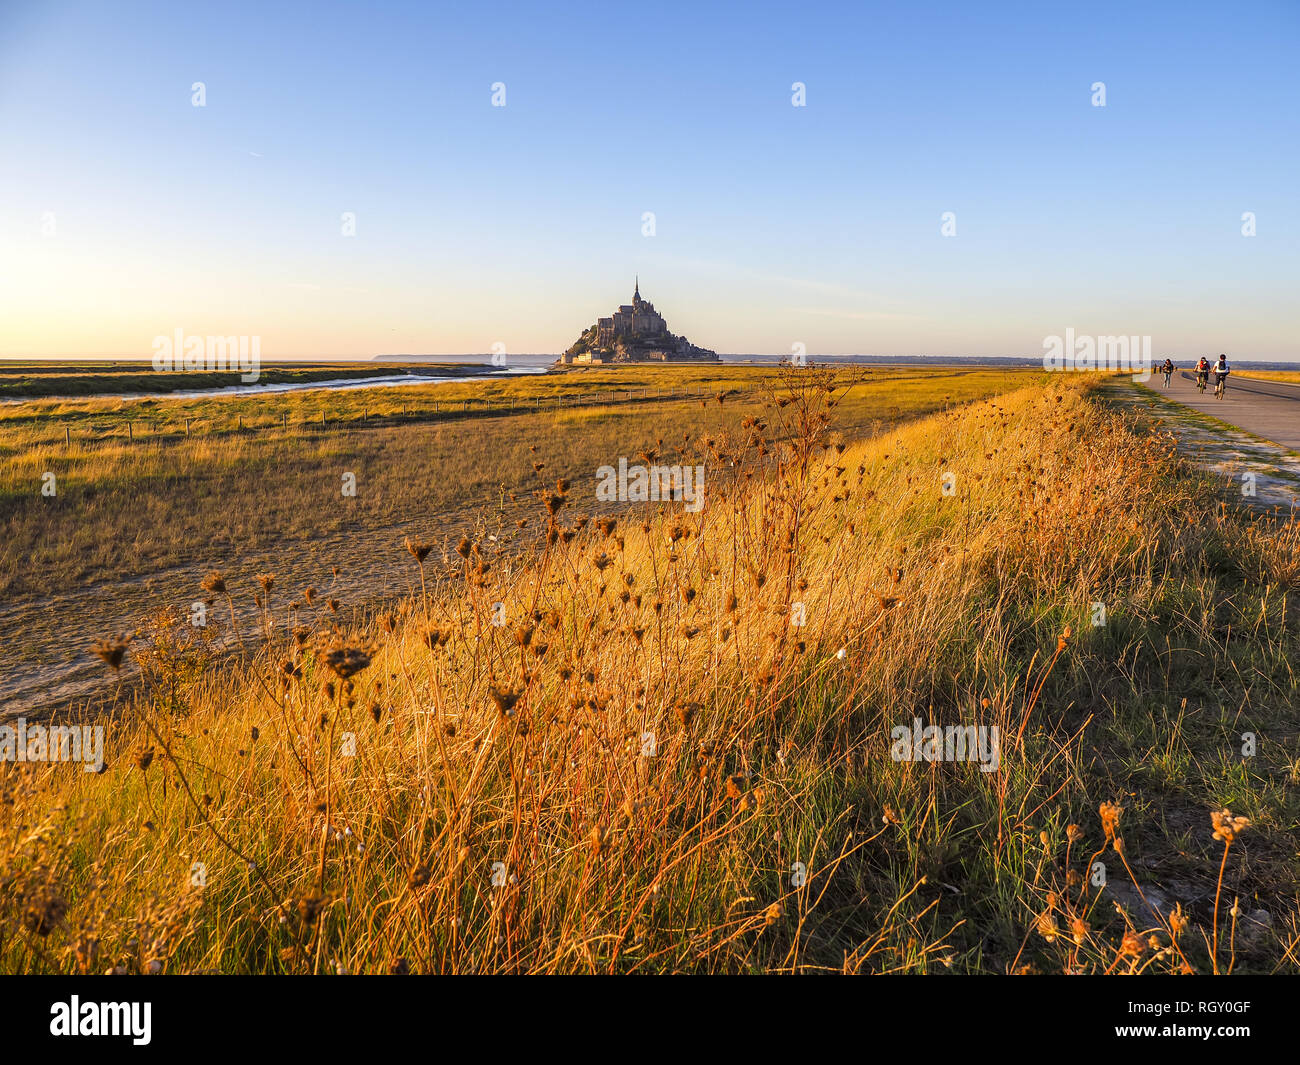 Le Mont Saint-Michel, Normandie, France, Europe Banque D'Images